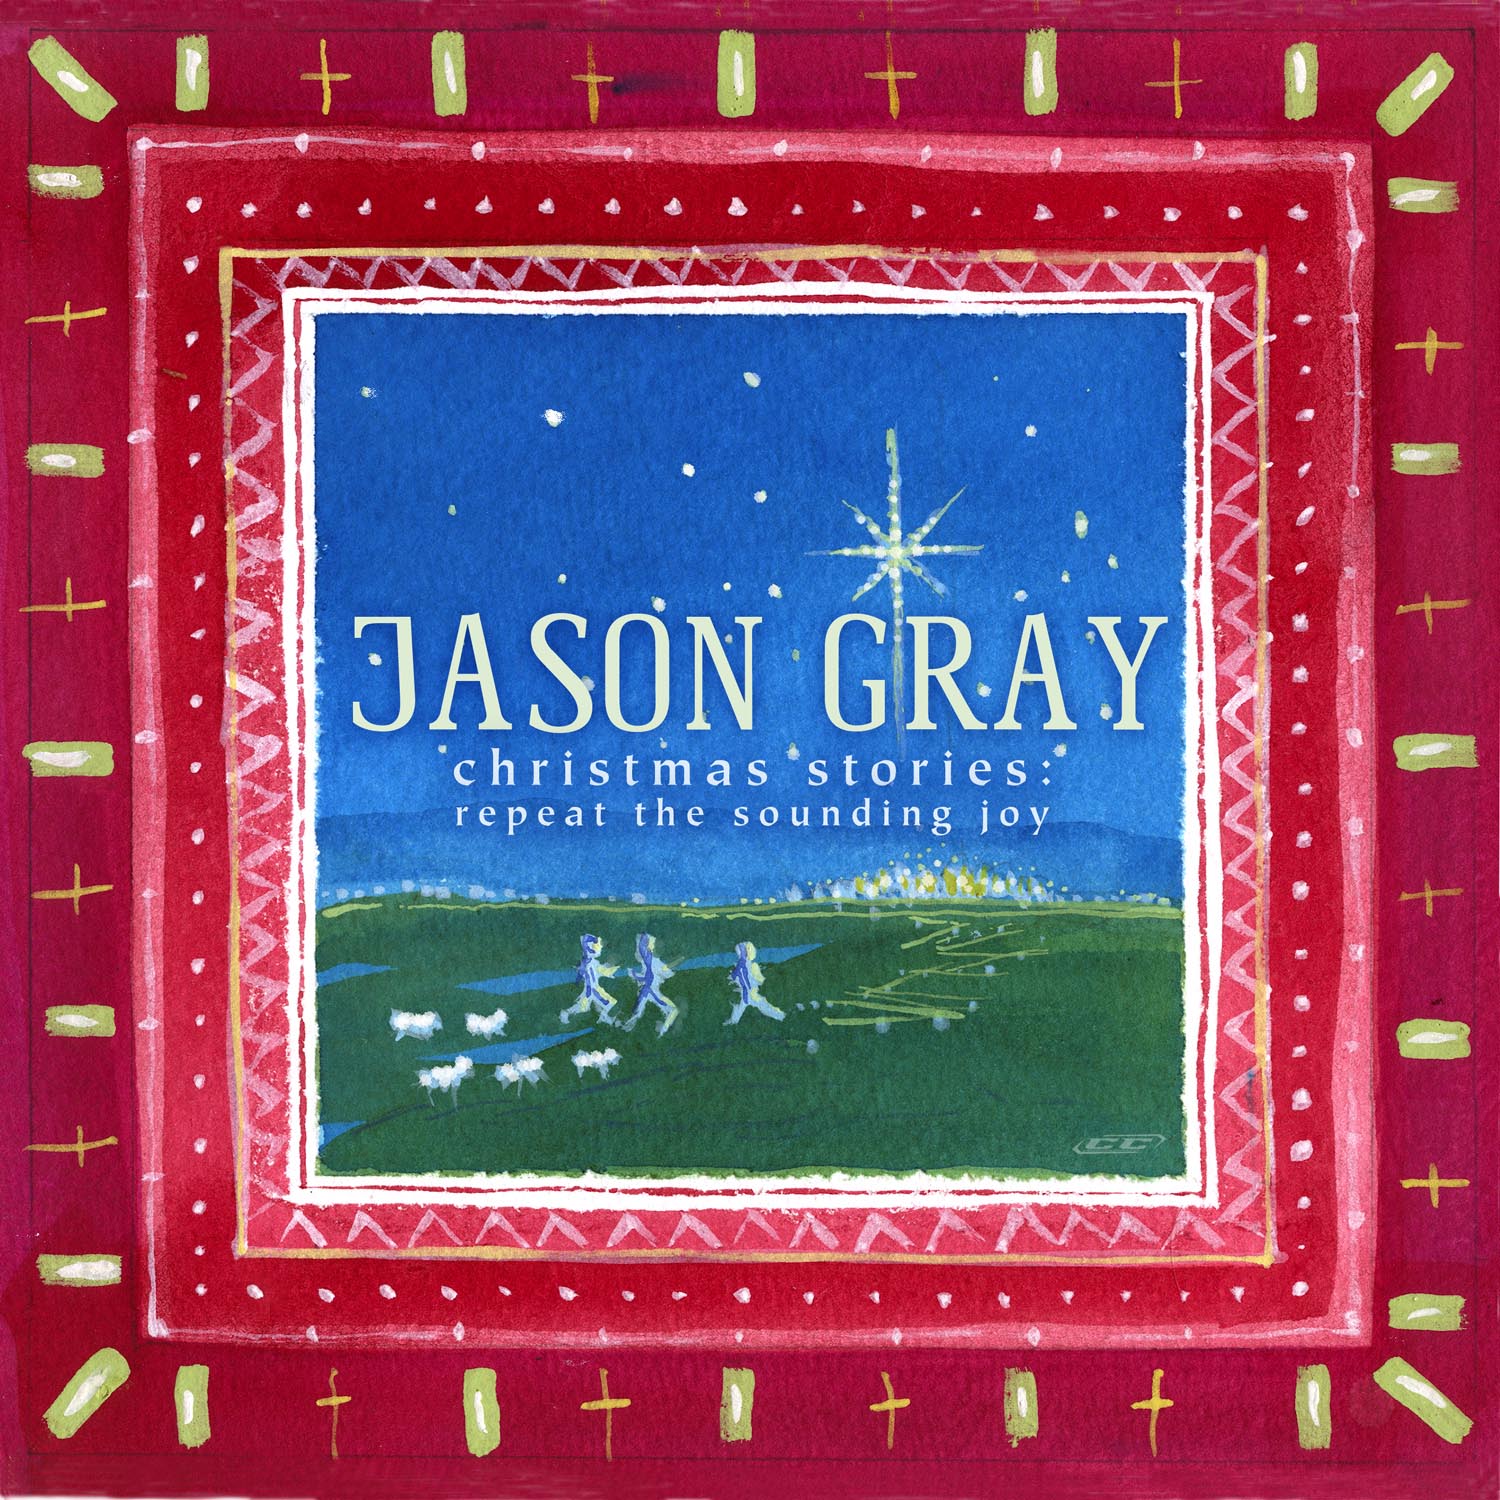 Jason Gray - Christmas Stories Repeat The Sounding Joy 2012 English Christian Christmas Album